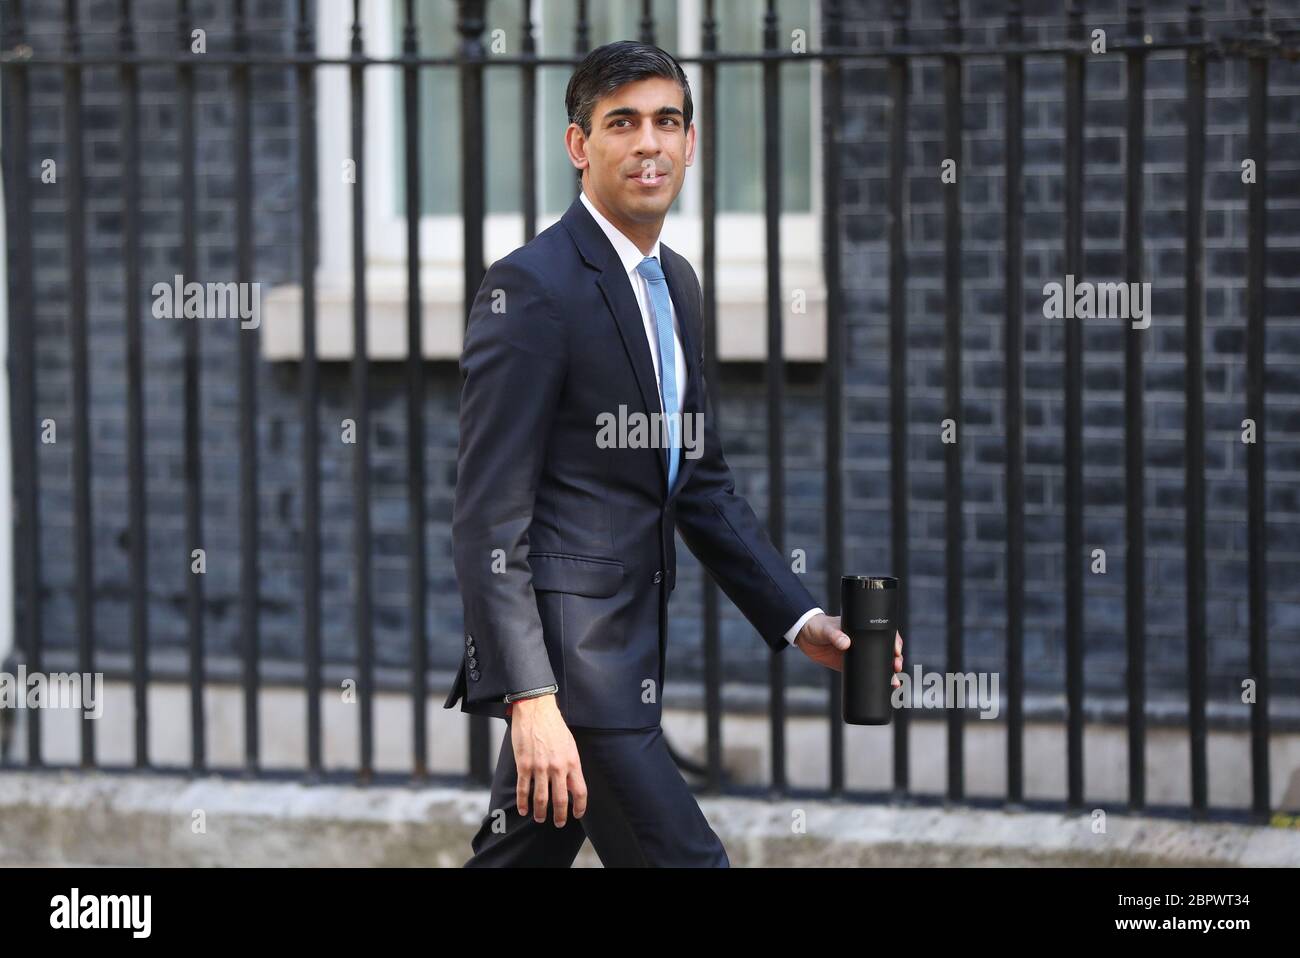 RITRASMETTERE LA DATA DI MODIFICA il Cancelliere Rishi Sunak arriva a Downing Street, Londra, dopo l’introduzione di misure per mettere il paese fuori blocco. Foto Stock